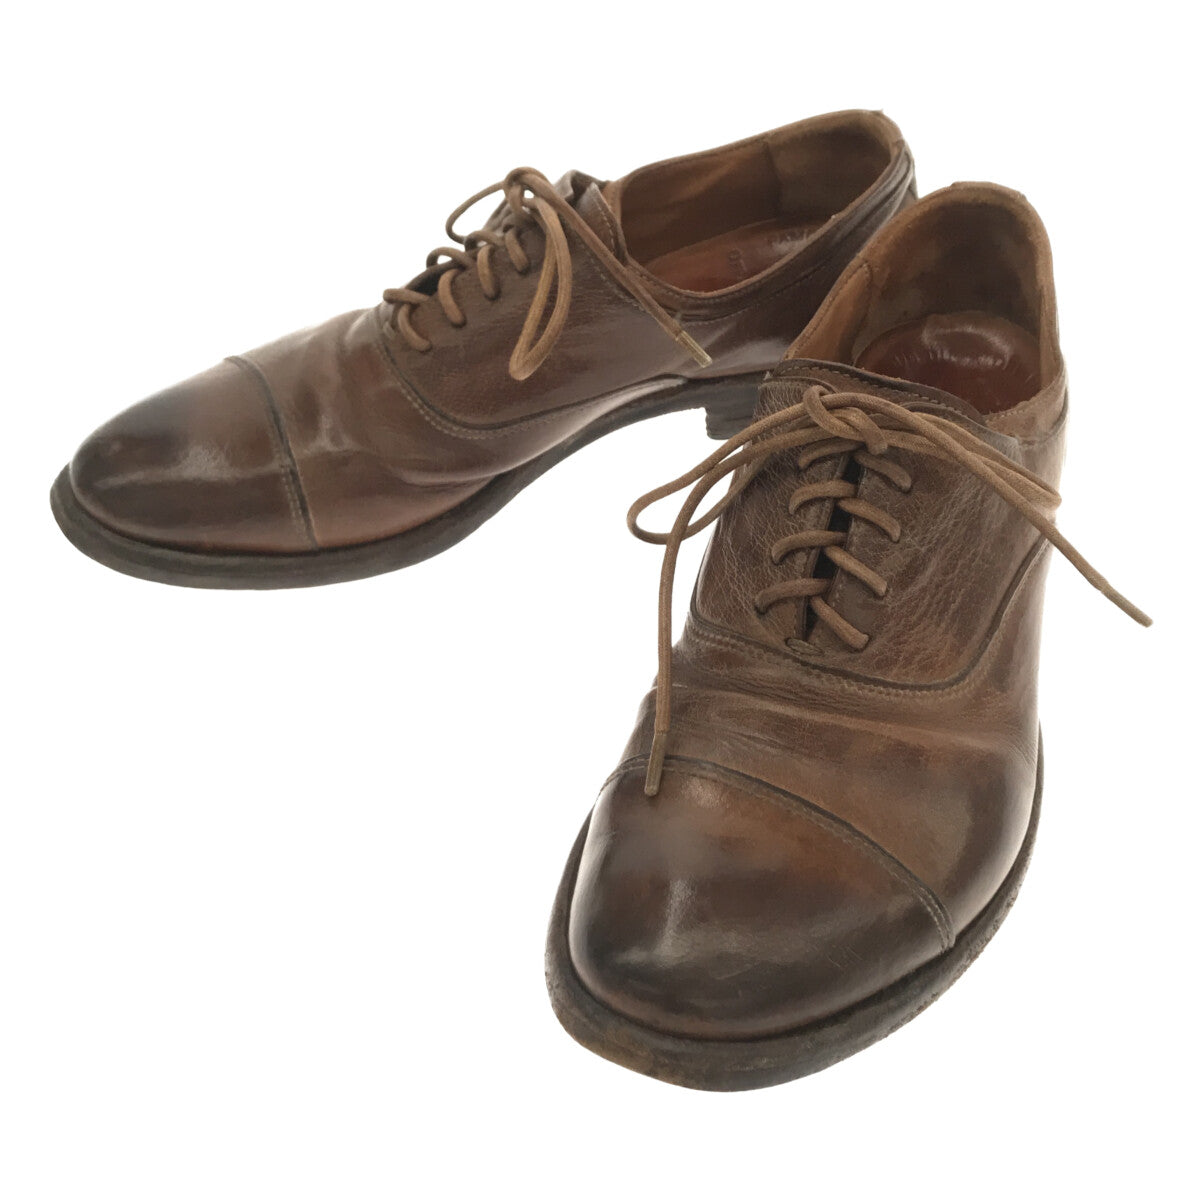 Cfficine Creative 革靴 36サイズヒール高さ0〜3cm - ローファー/革靴